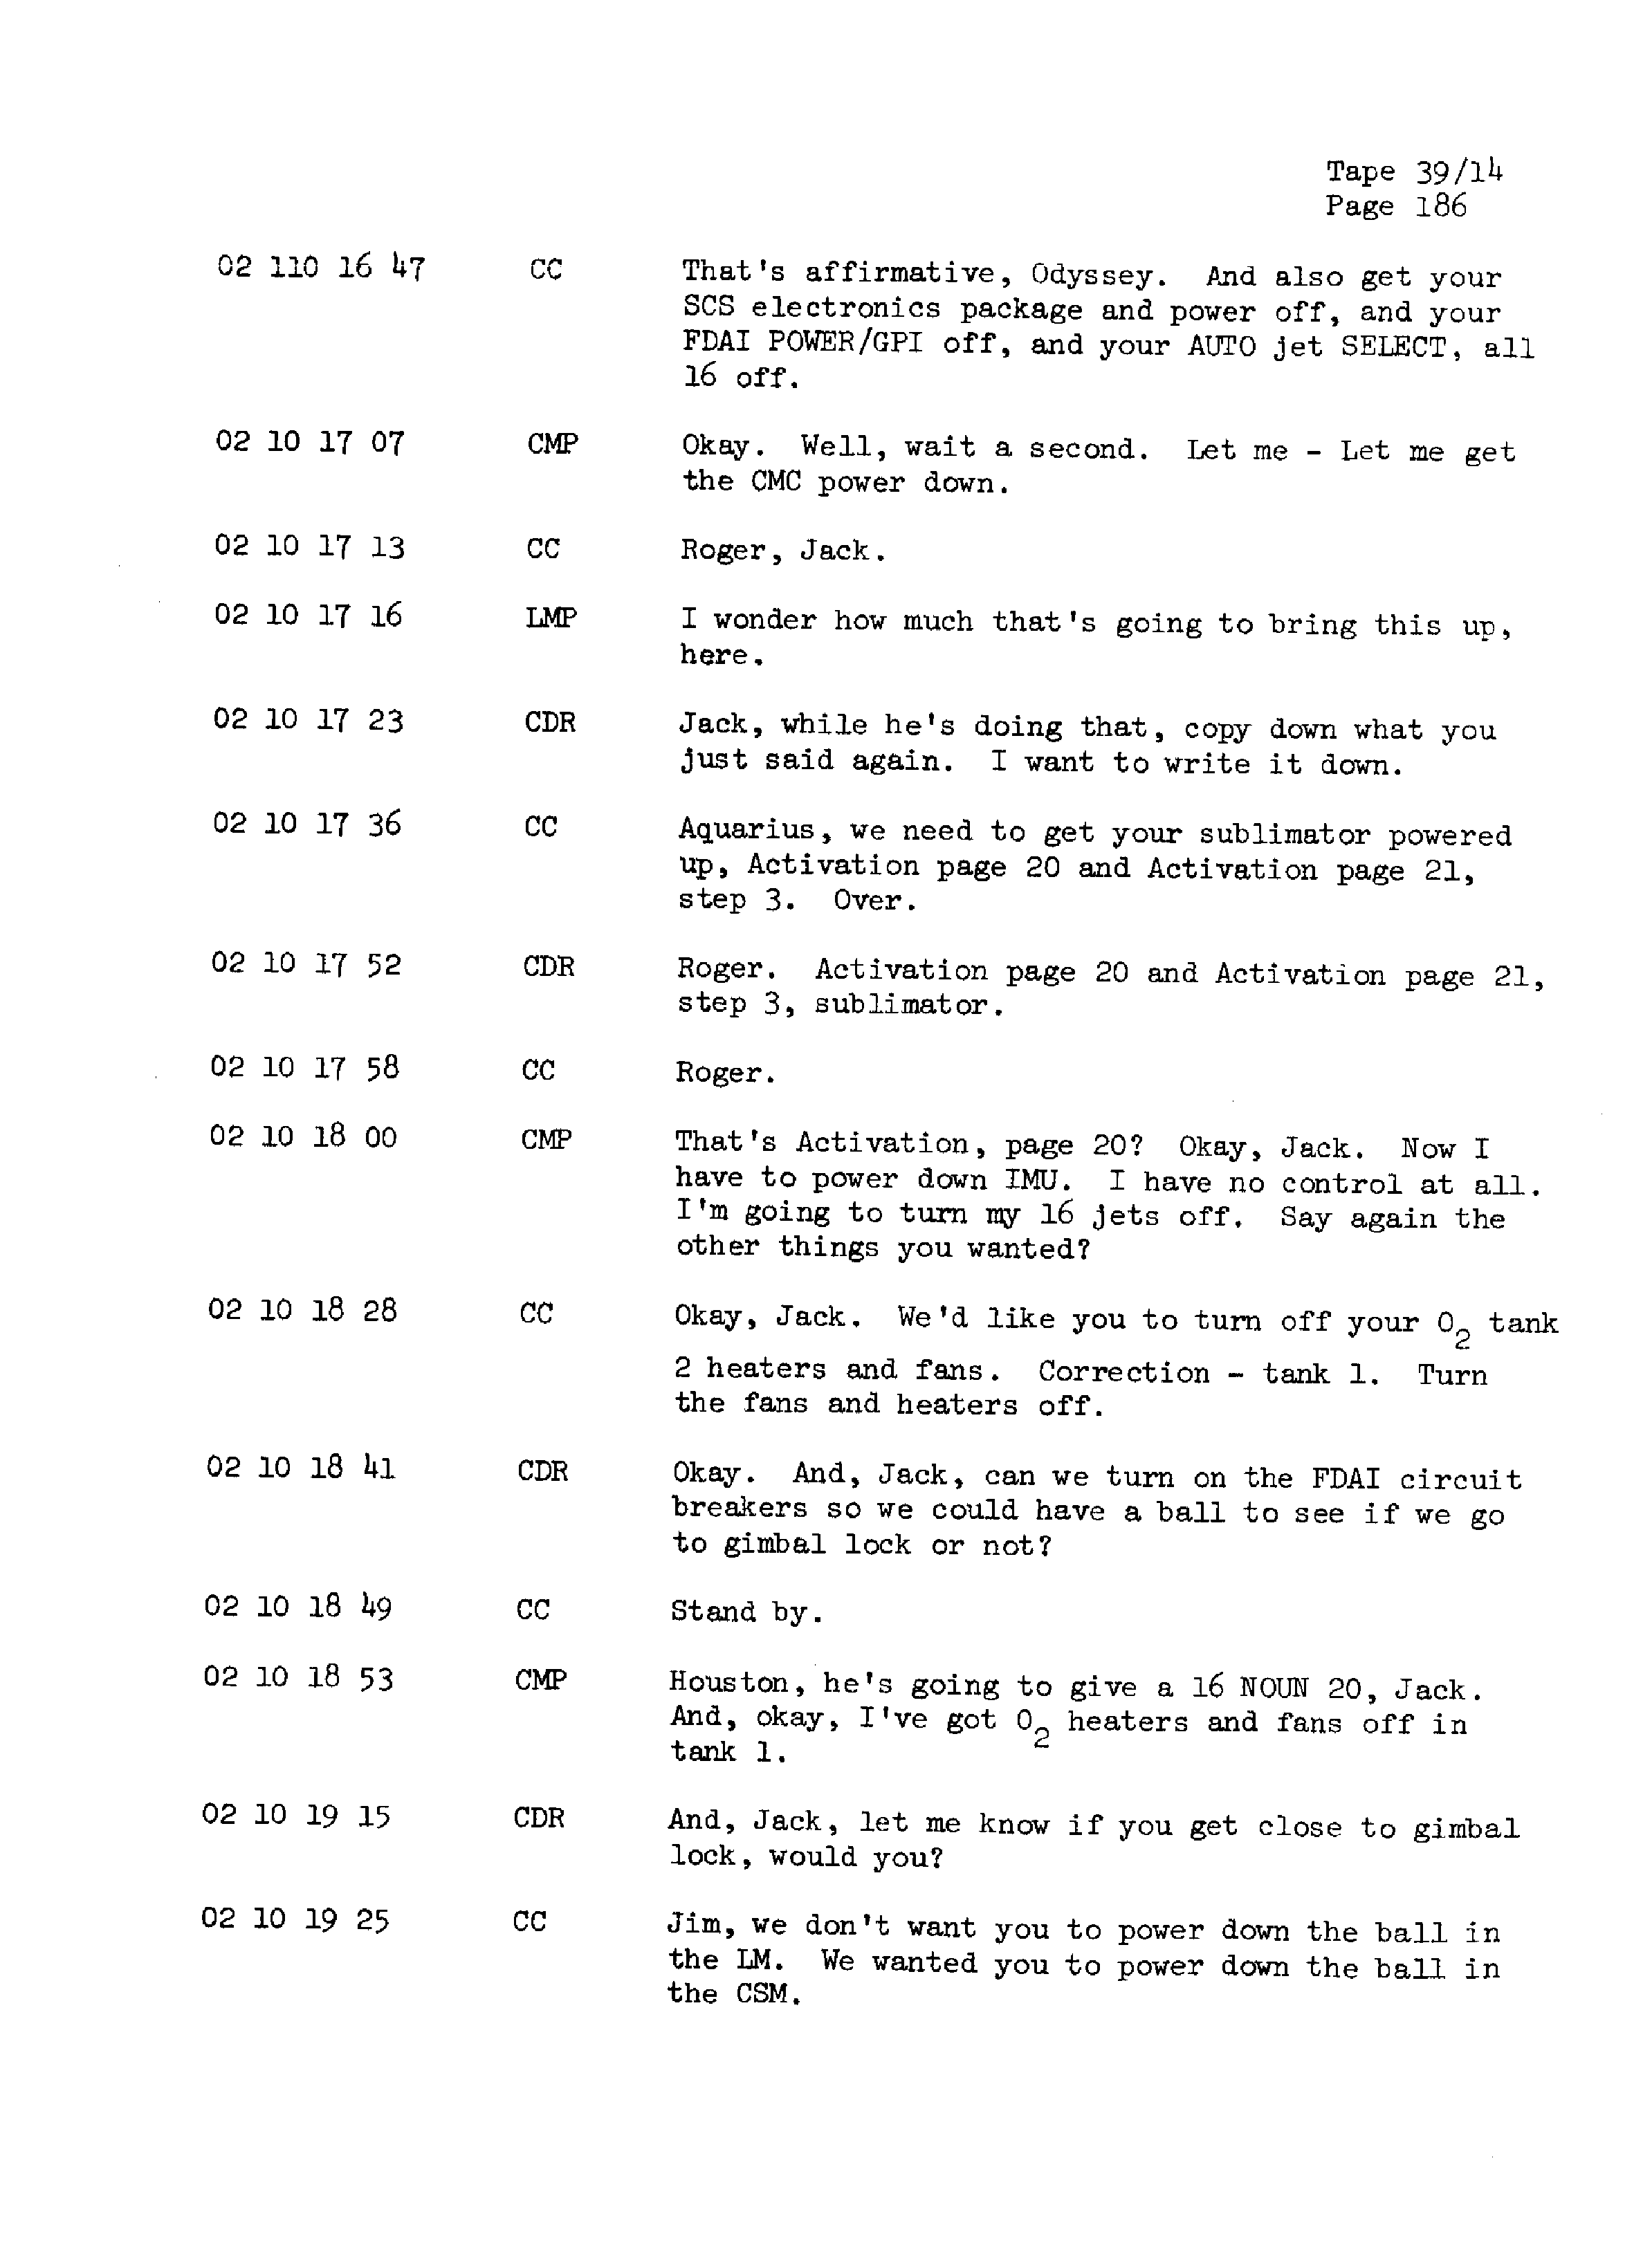 Page 193 of Apollo 13’s original transcript